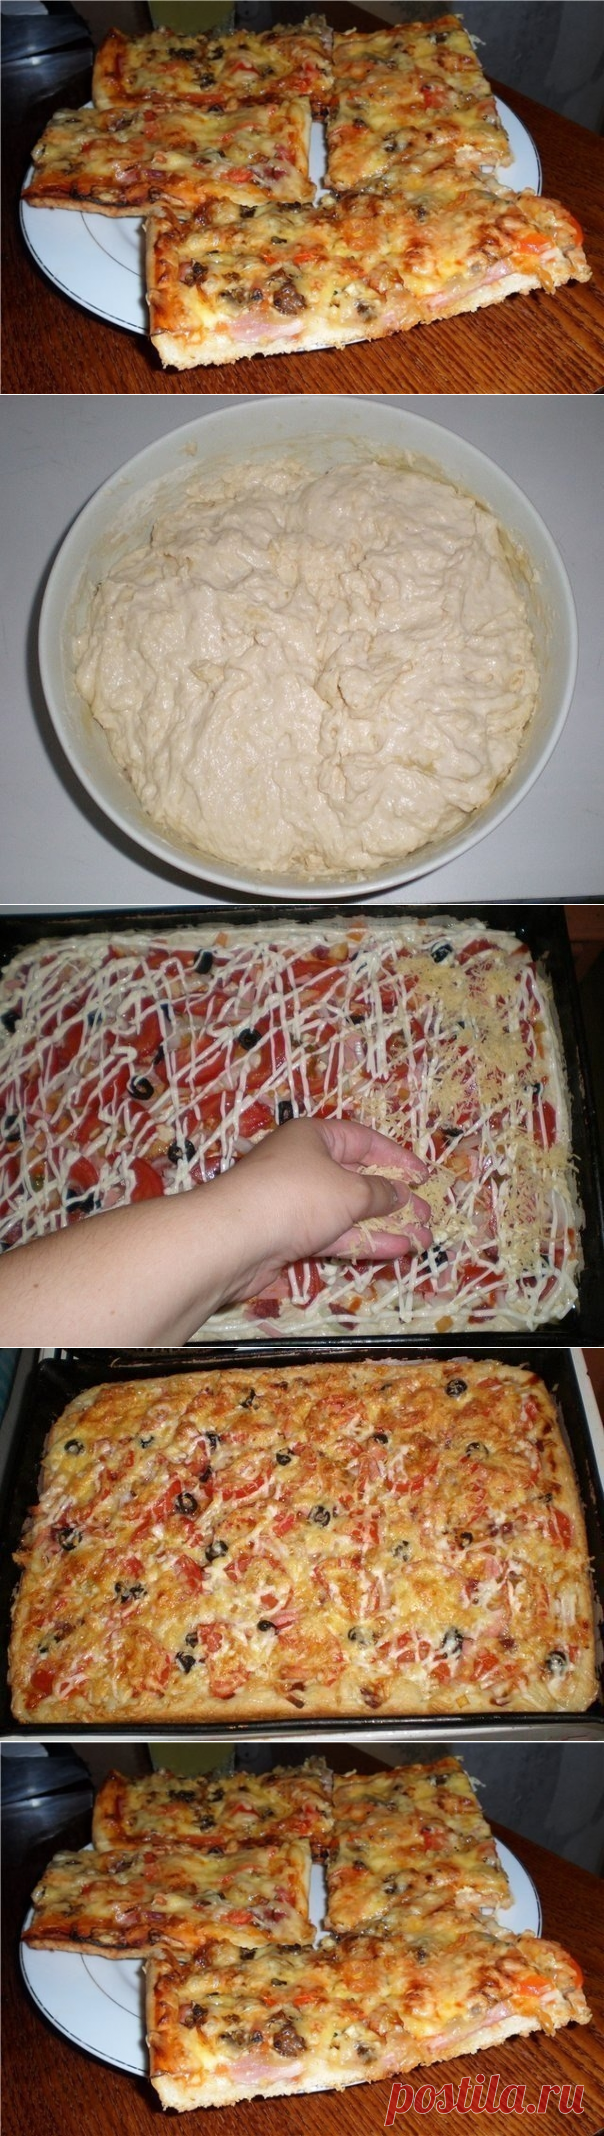 что надо чтобы приготовить пиццу в домашних условиях фото 22